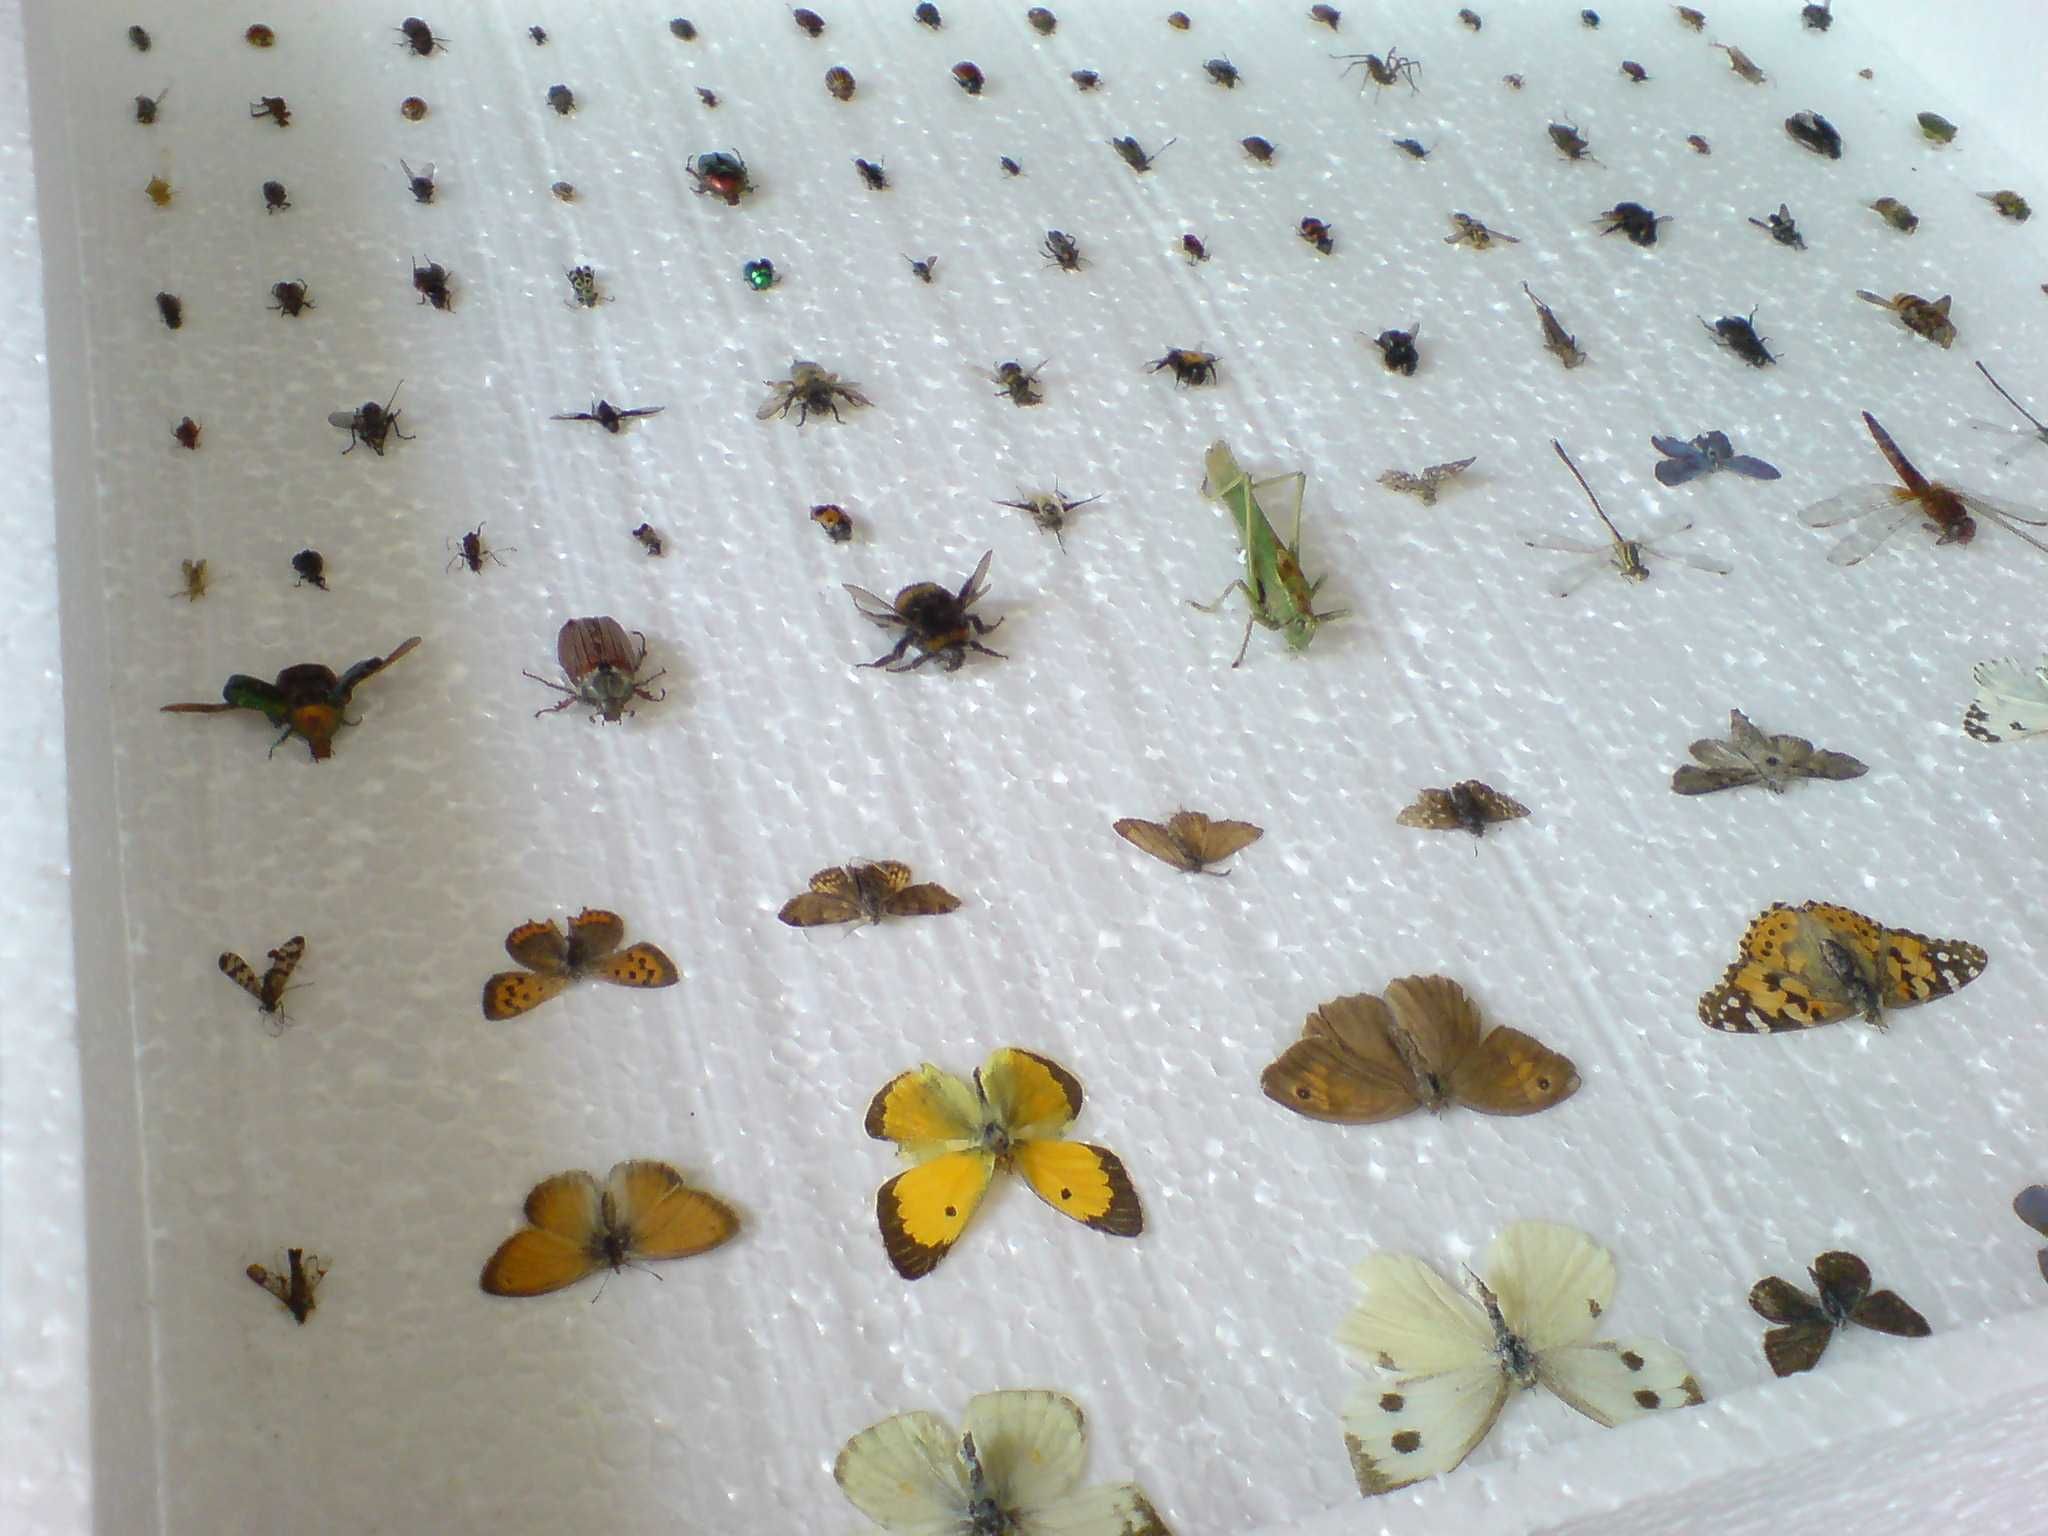 Насекомые,бабочки,жуки,комахи в рамках под стеклом